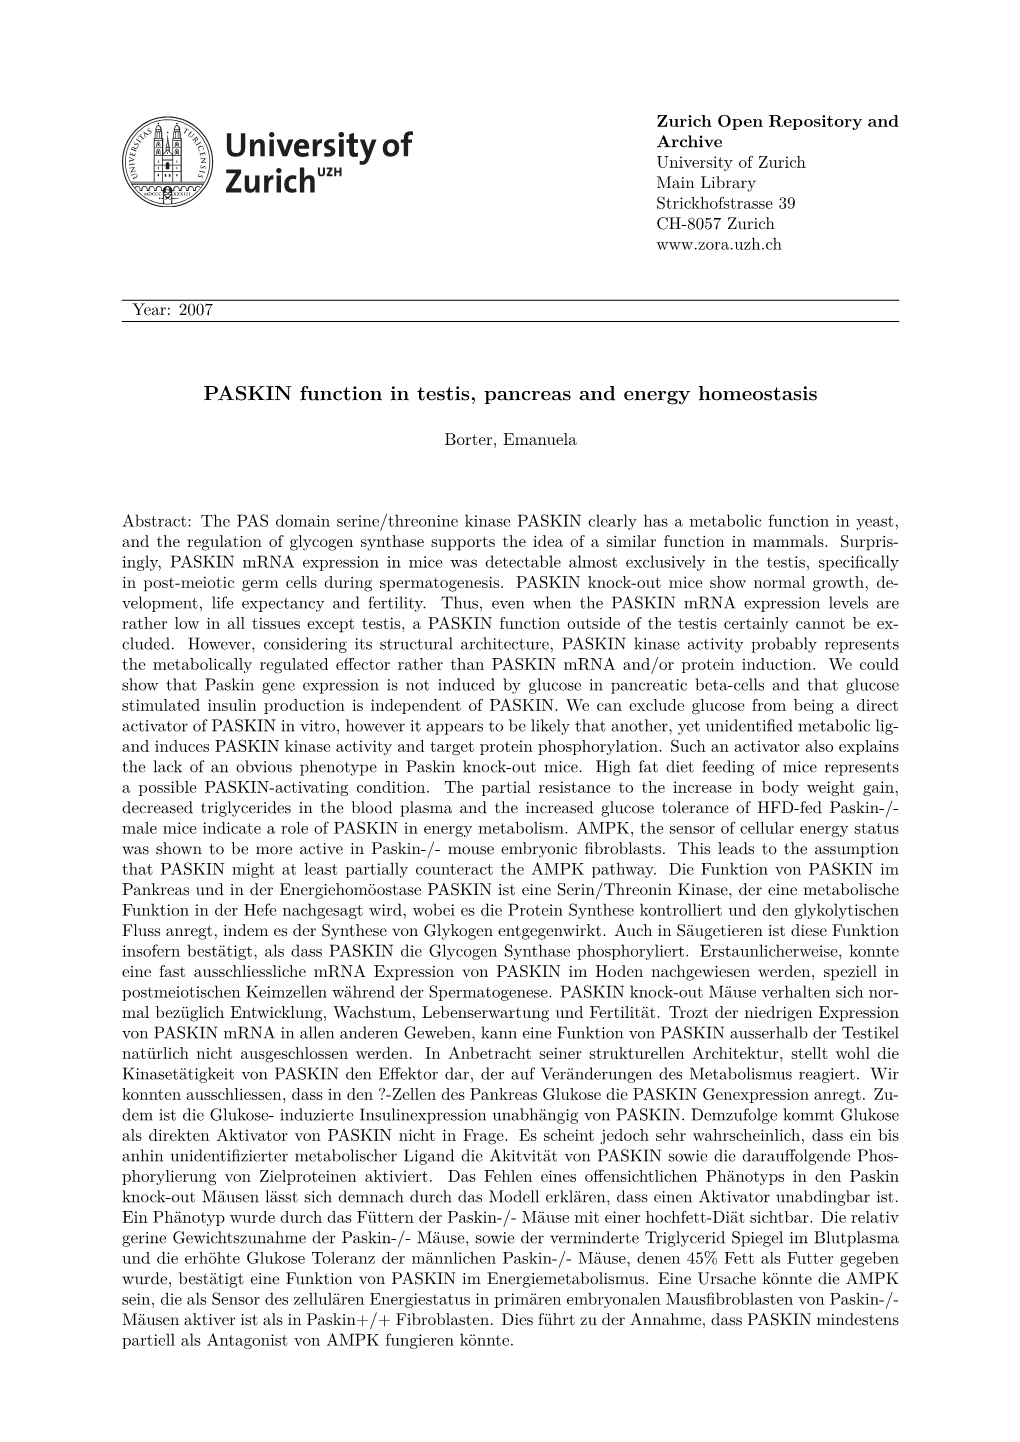 'PASKIN Function in Testis, Pancreas and Energy Homeostasis'